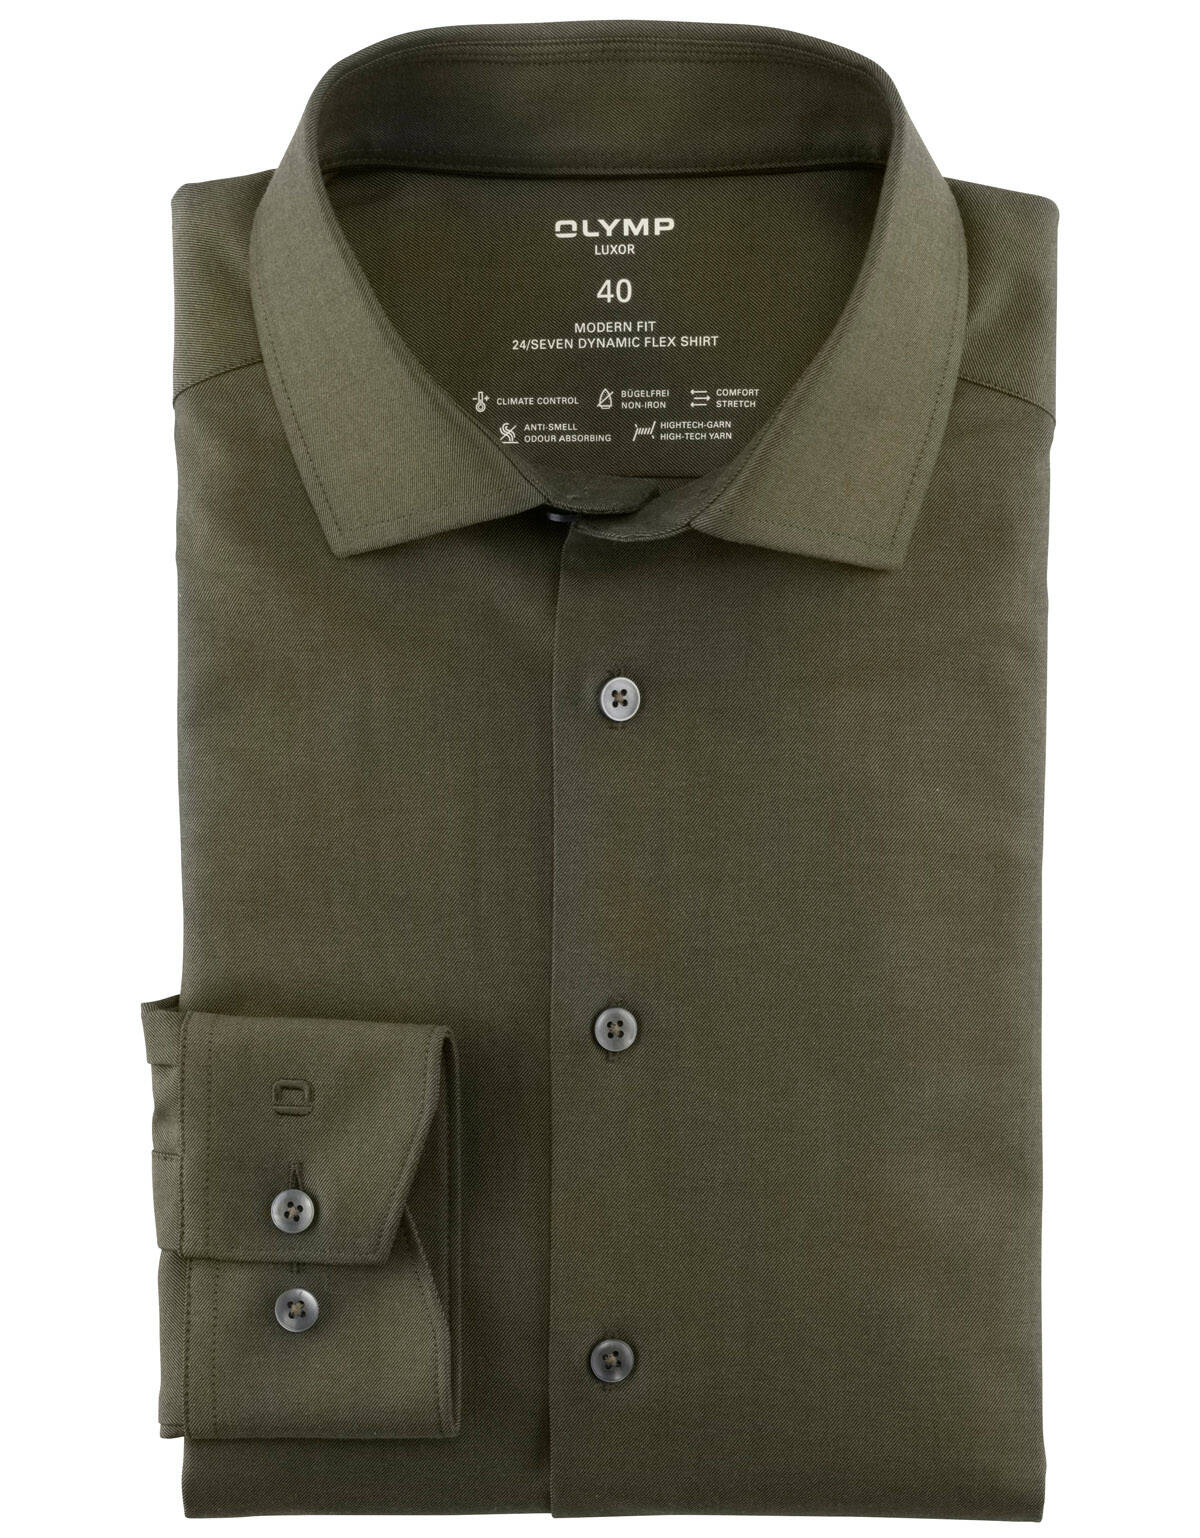 Рубашка мужская OLYMP Luxor 24/7, modern fit[Зеленый]